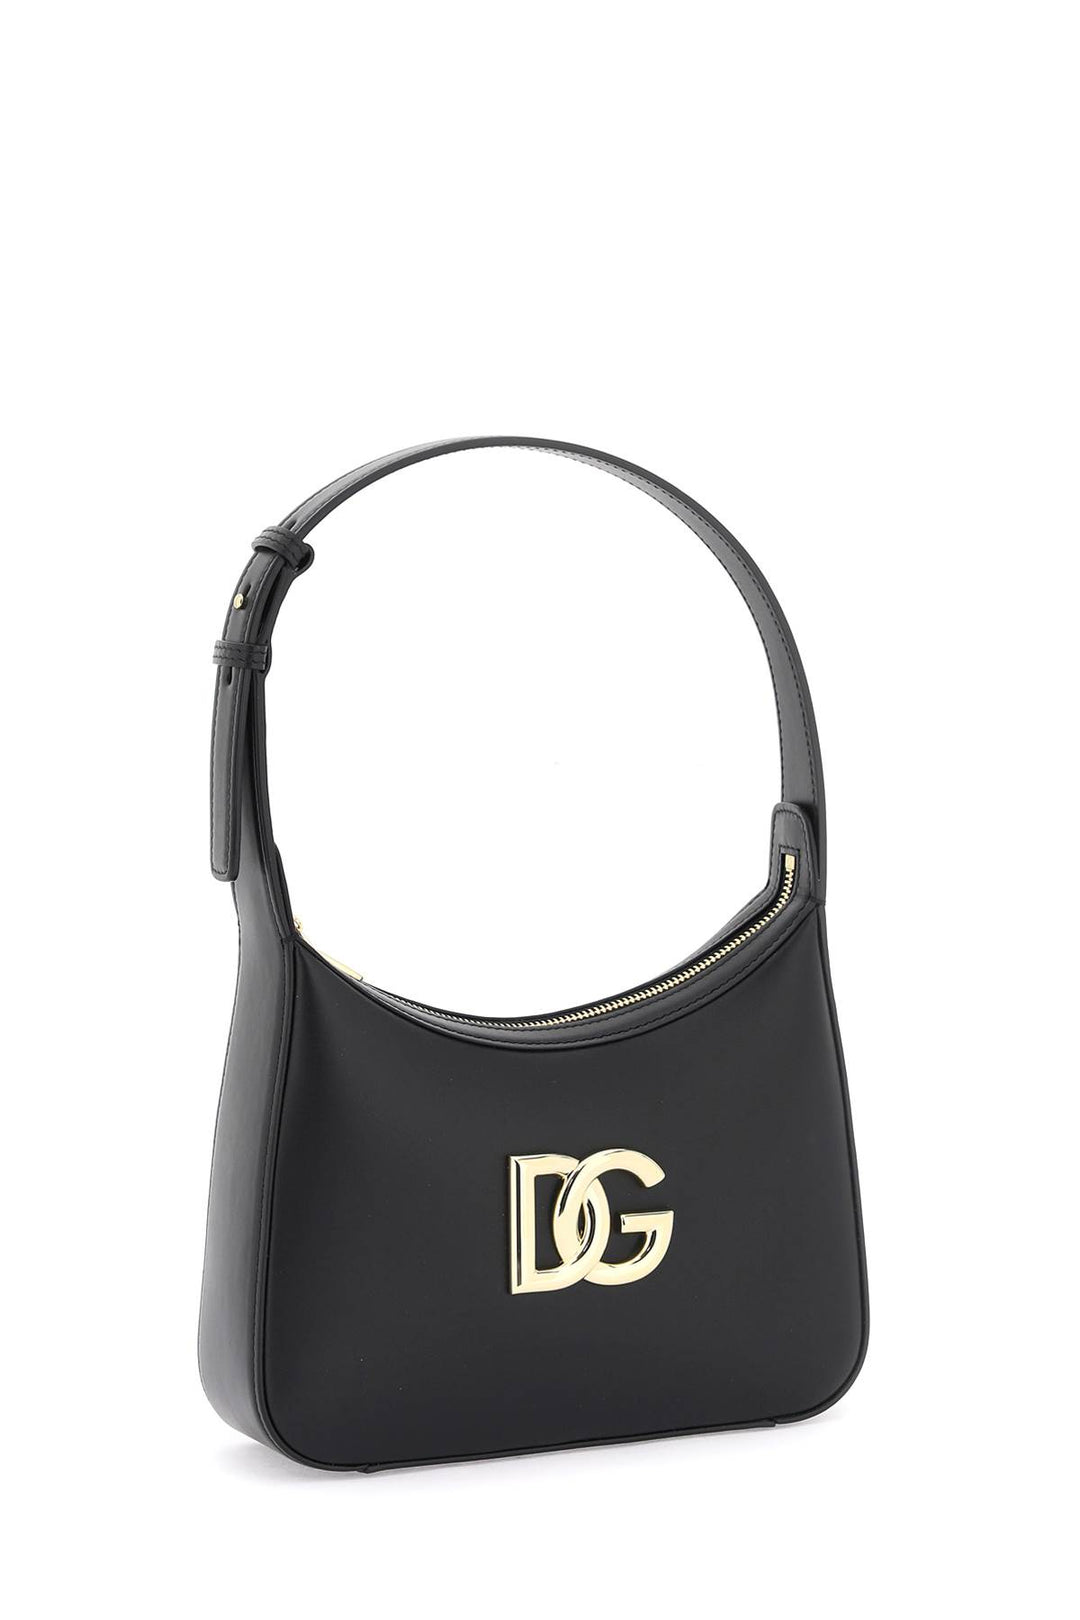 Dolce & Gabbana 3.5 Shoulder Bag   Nero